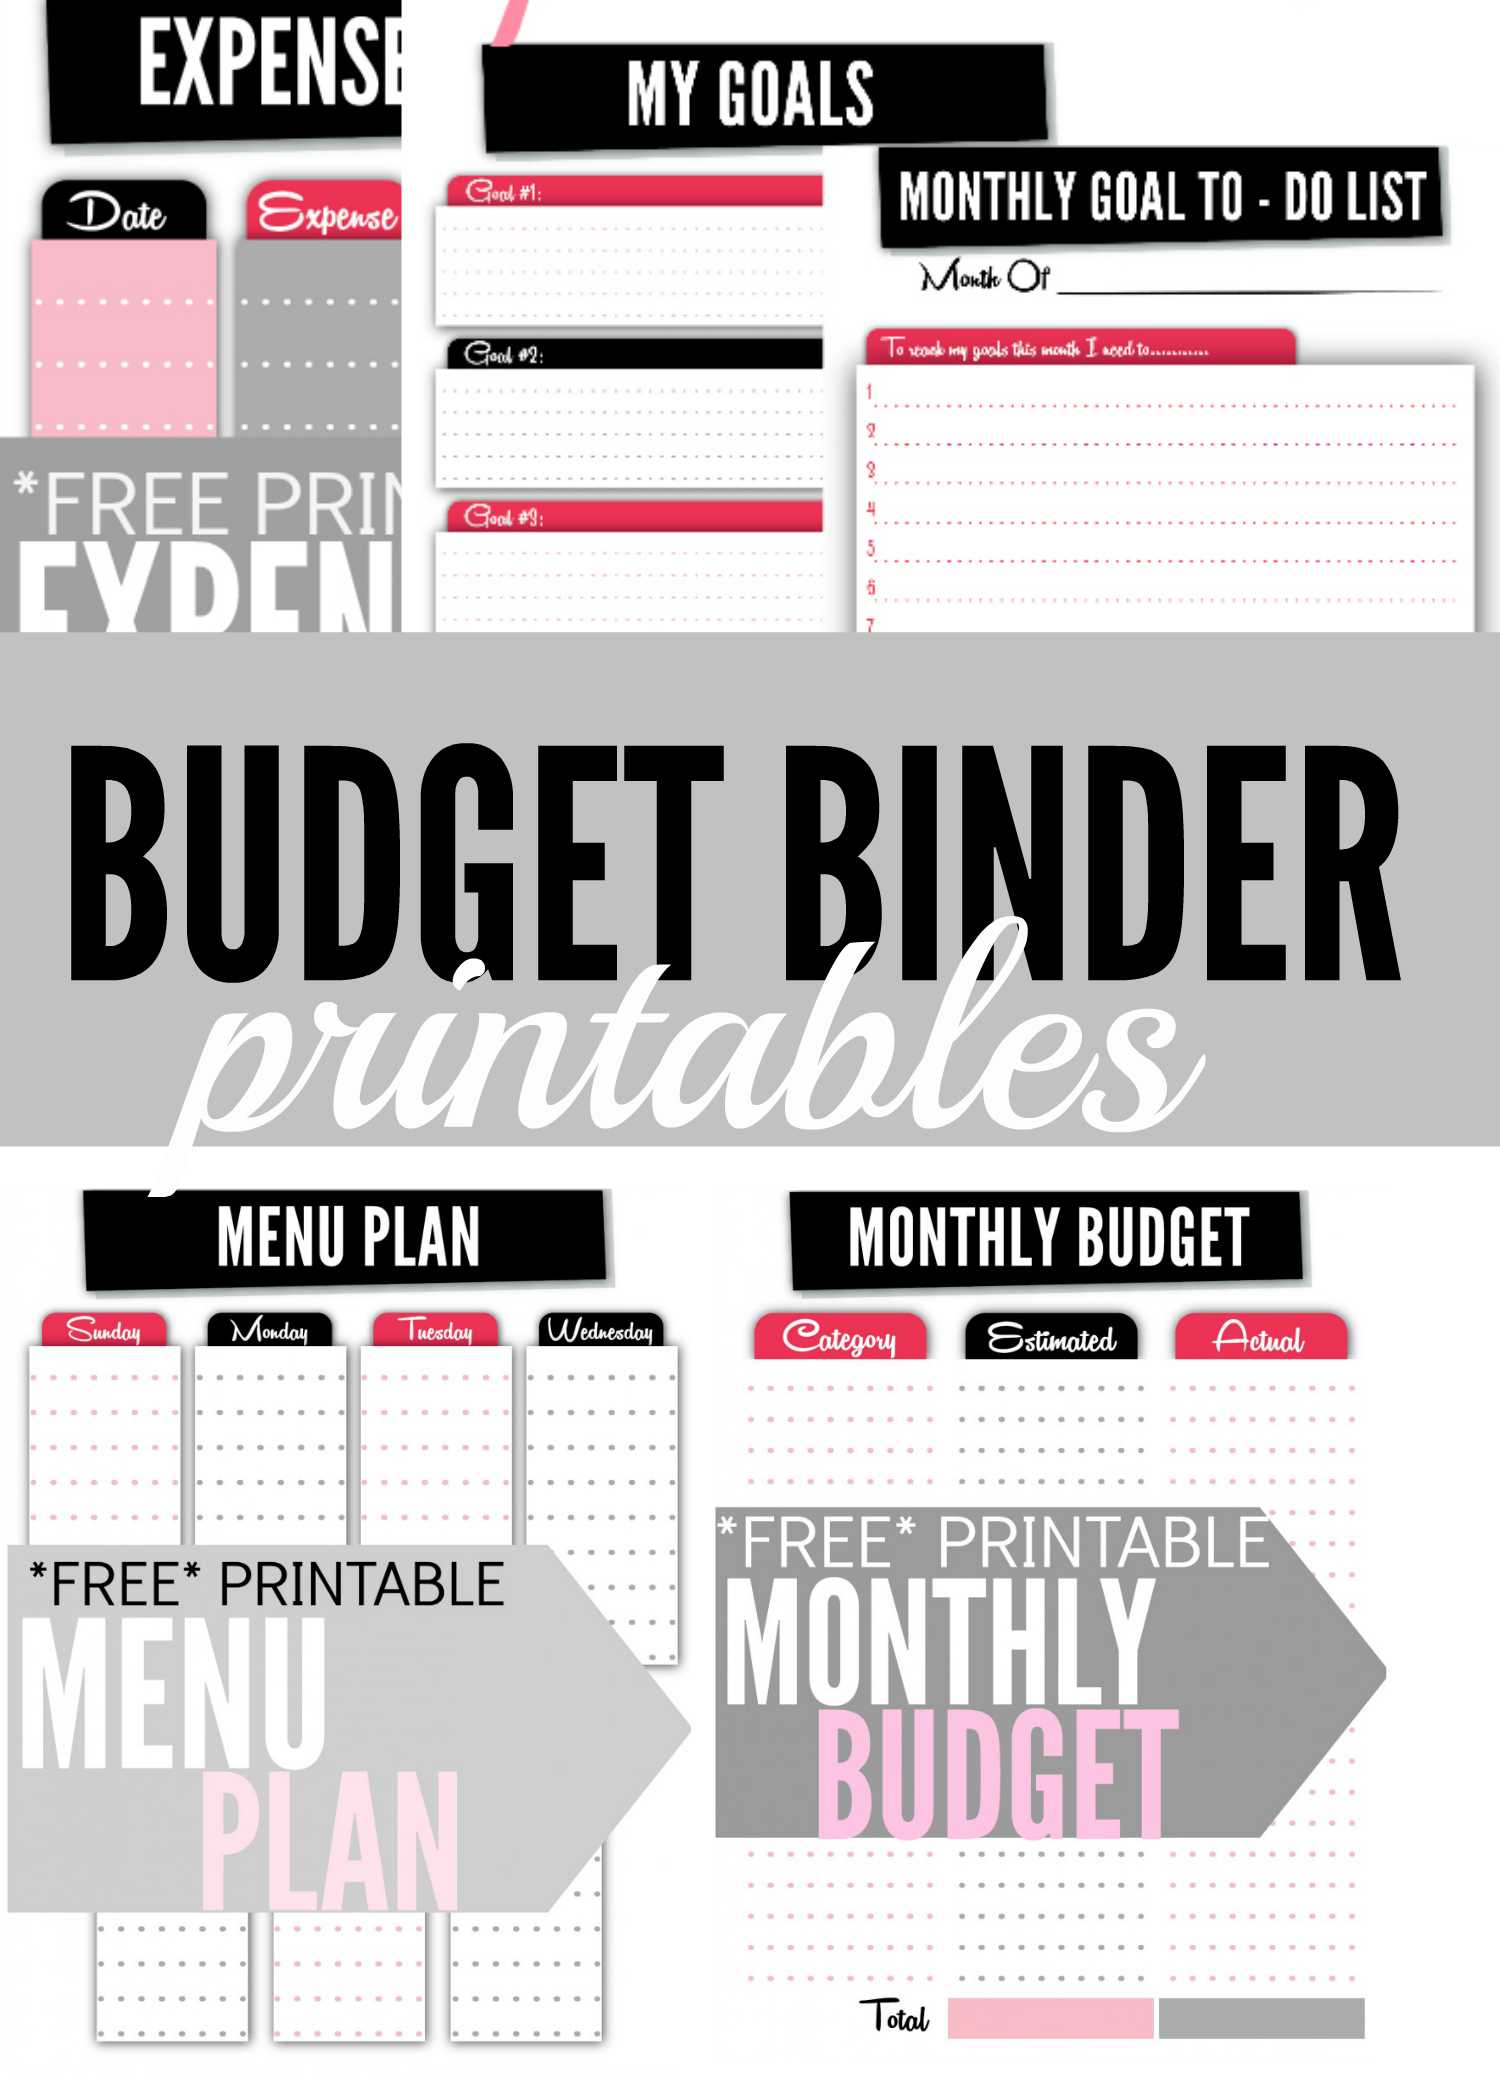 Free Printable Budget Binder Worksheets or Bud Worksheet Printable Binder Worksheets Free Concept 2018